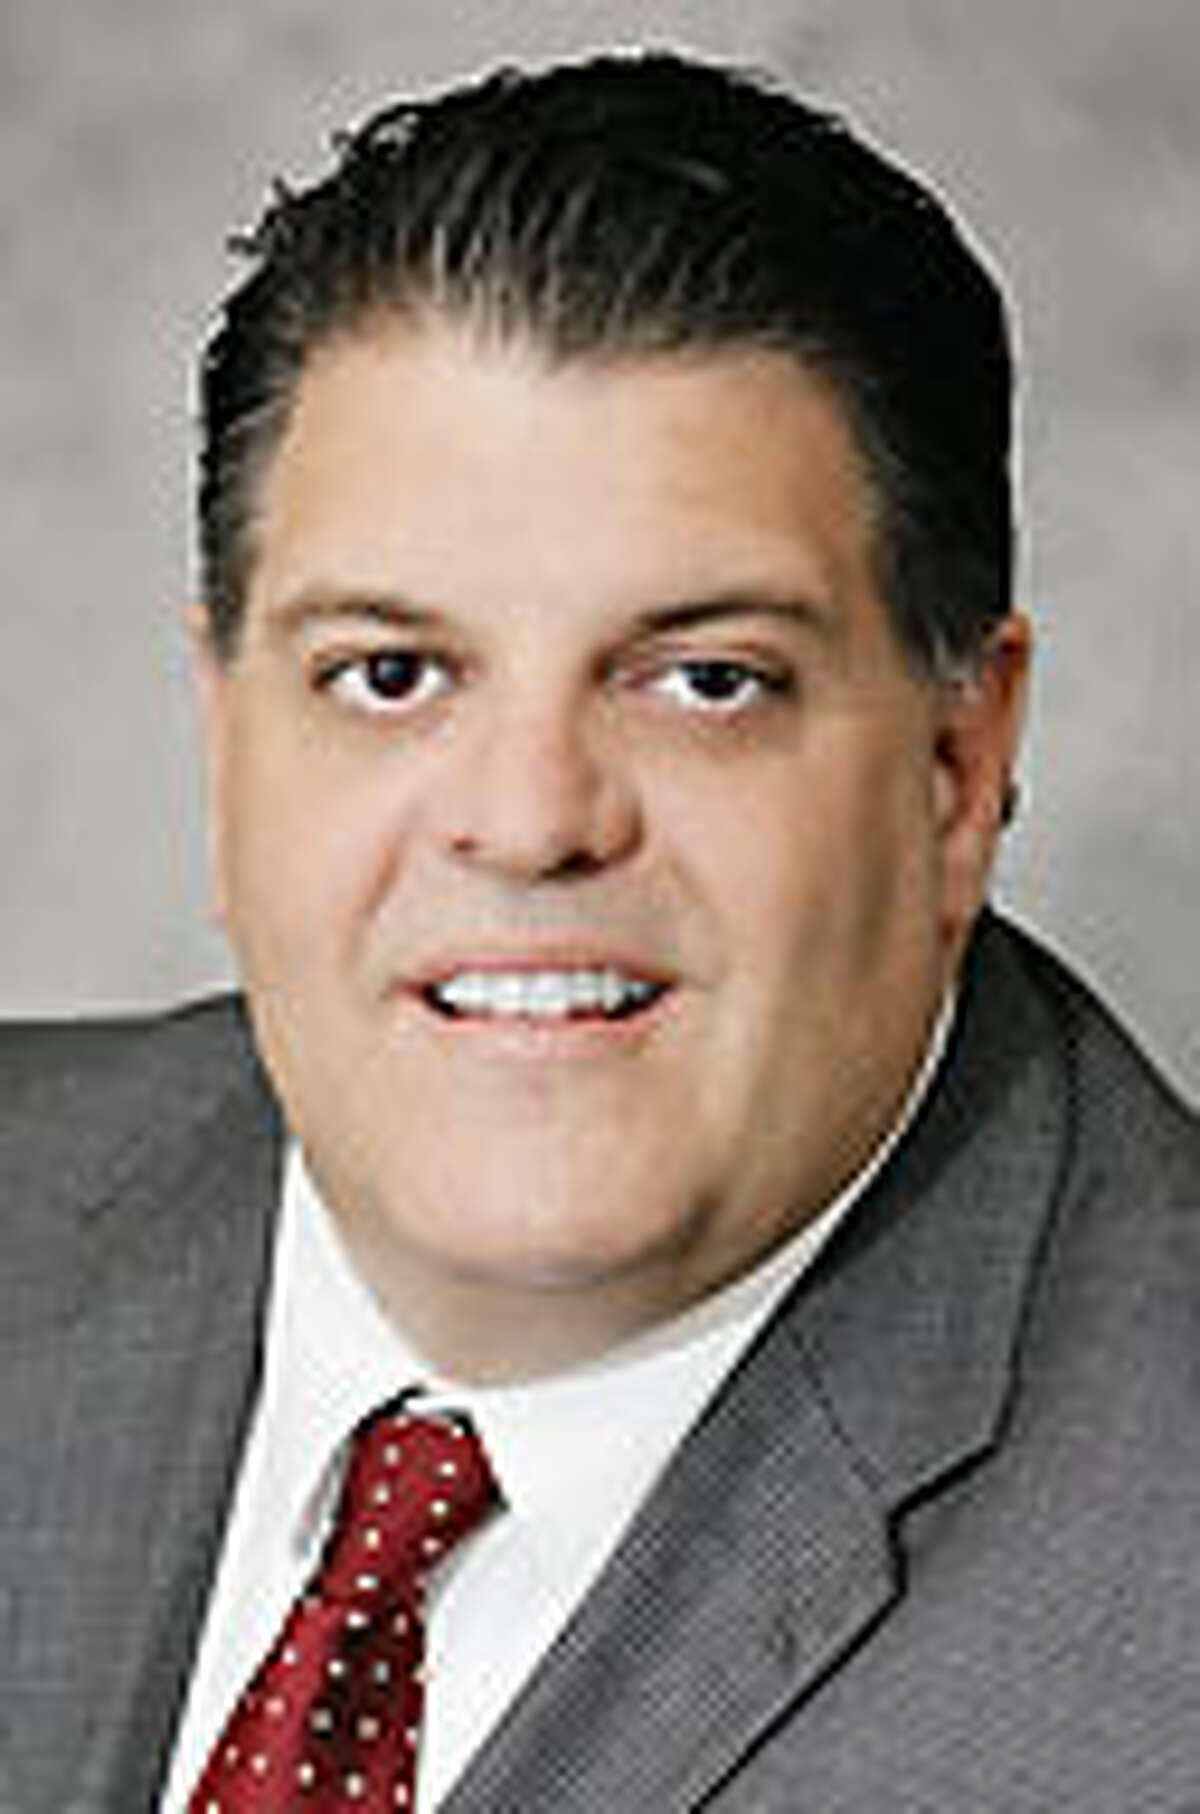 State Rep. Dave Rutigliano